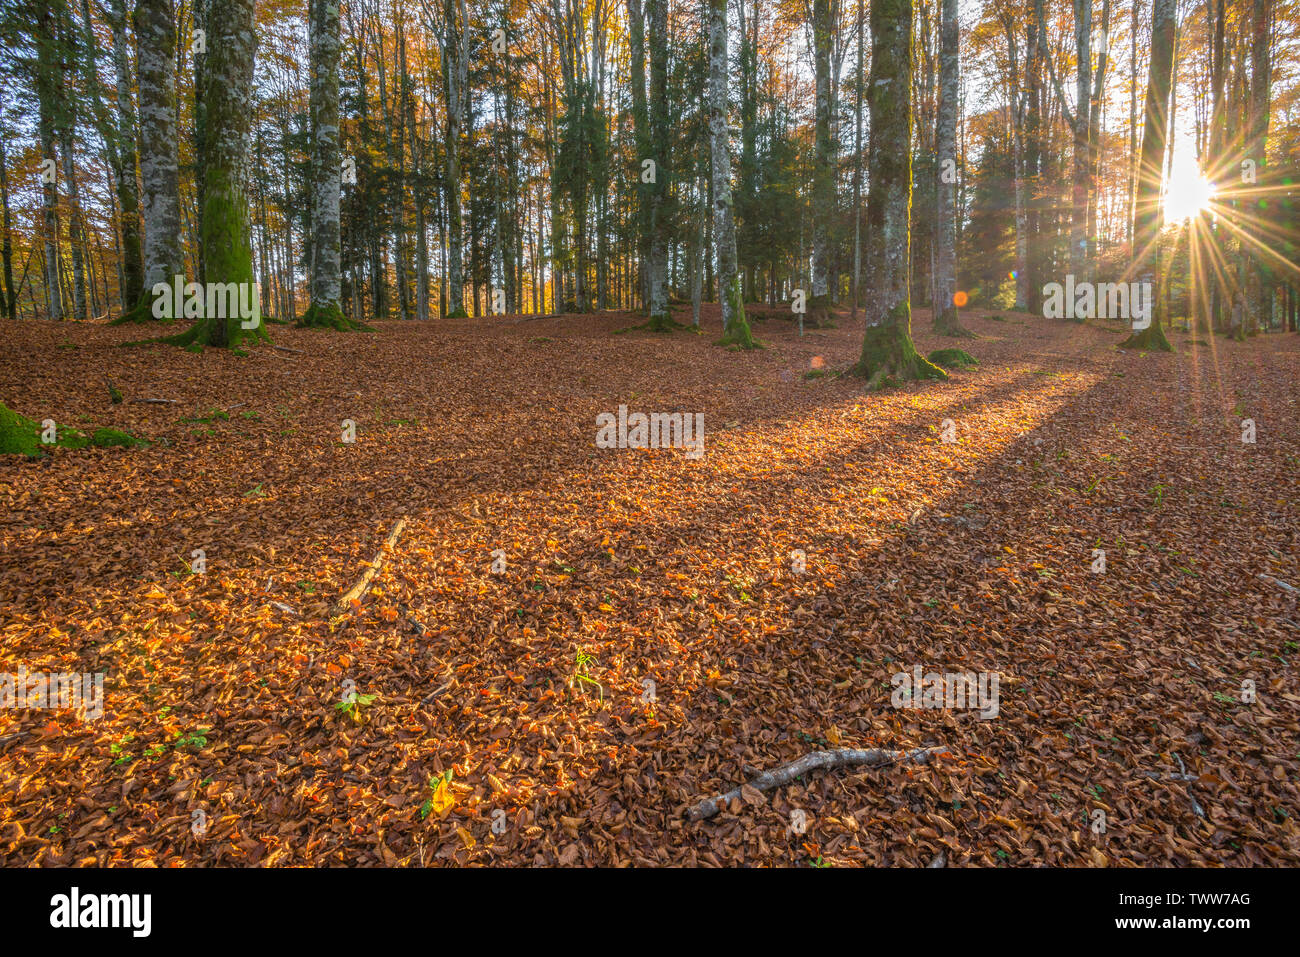 Sonne, die durch die Bäume in einem Buchenwald in Cansiglio, Italien. Oktober Blattwerk, Blätter, Teppich, Moosigen weiße Rinde Bäume. Baum Schatten. Stockfoto